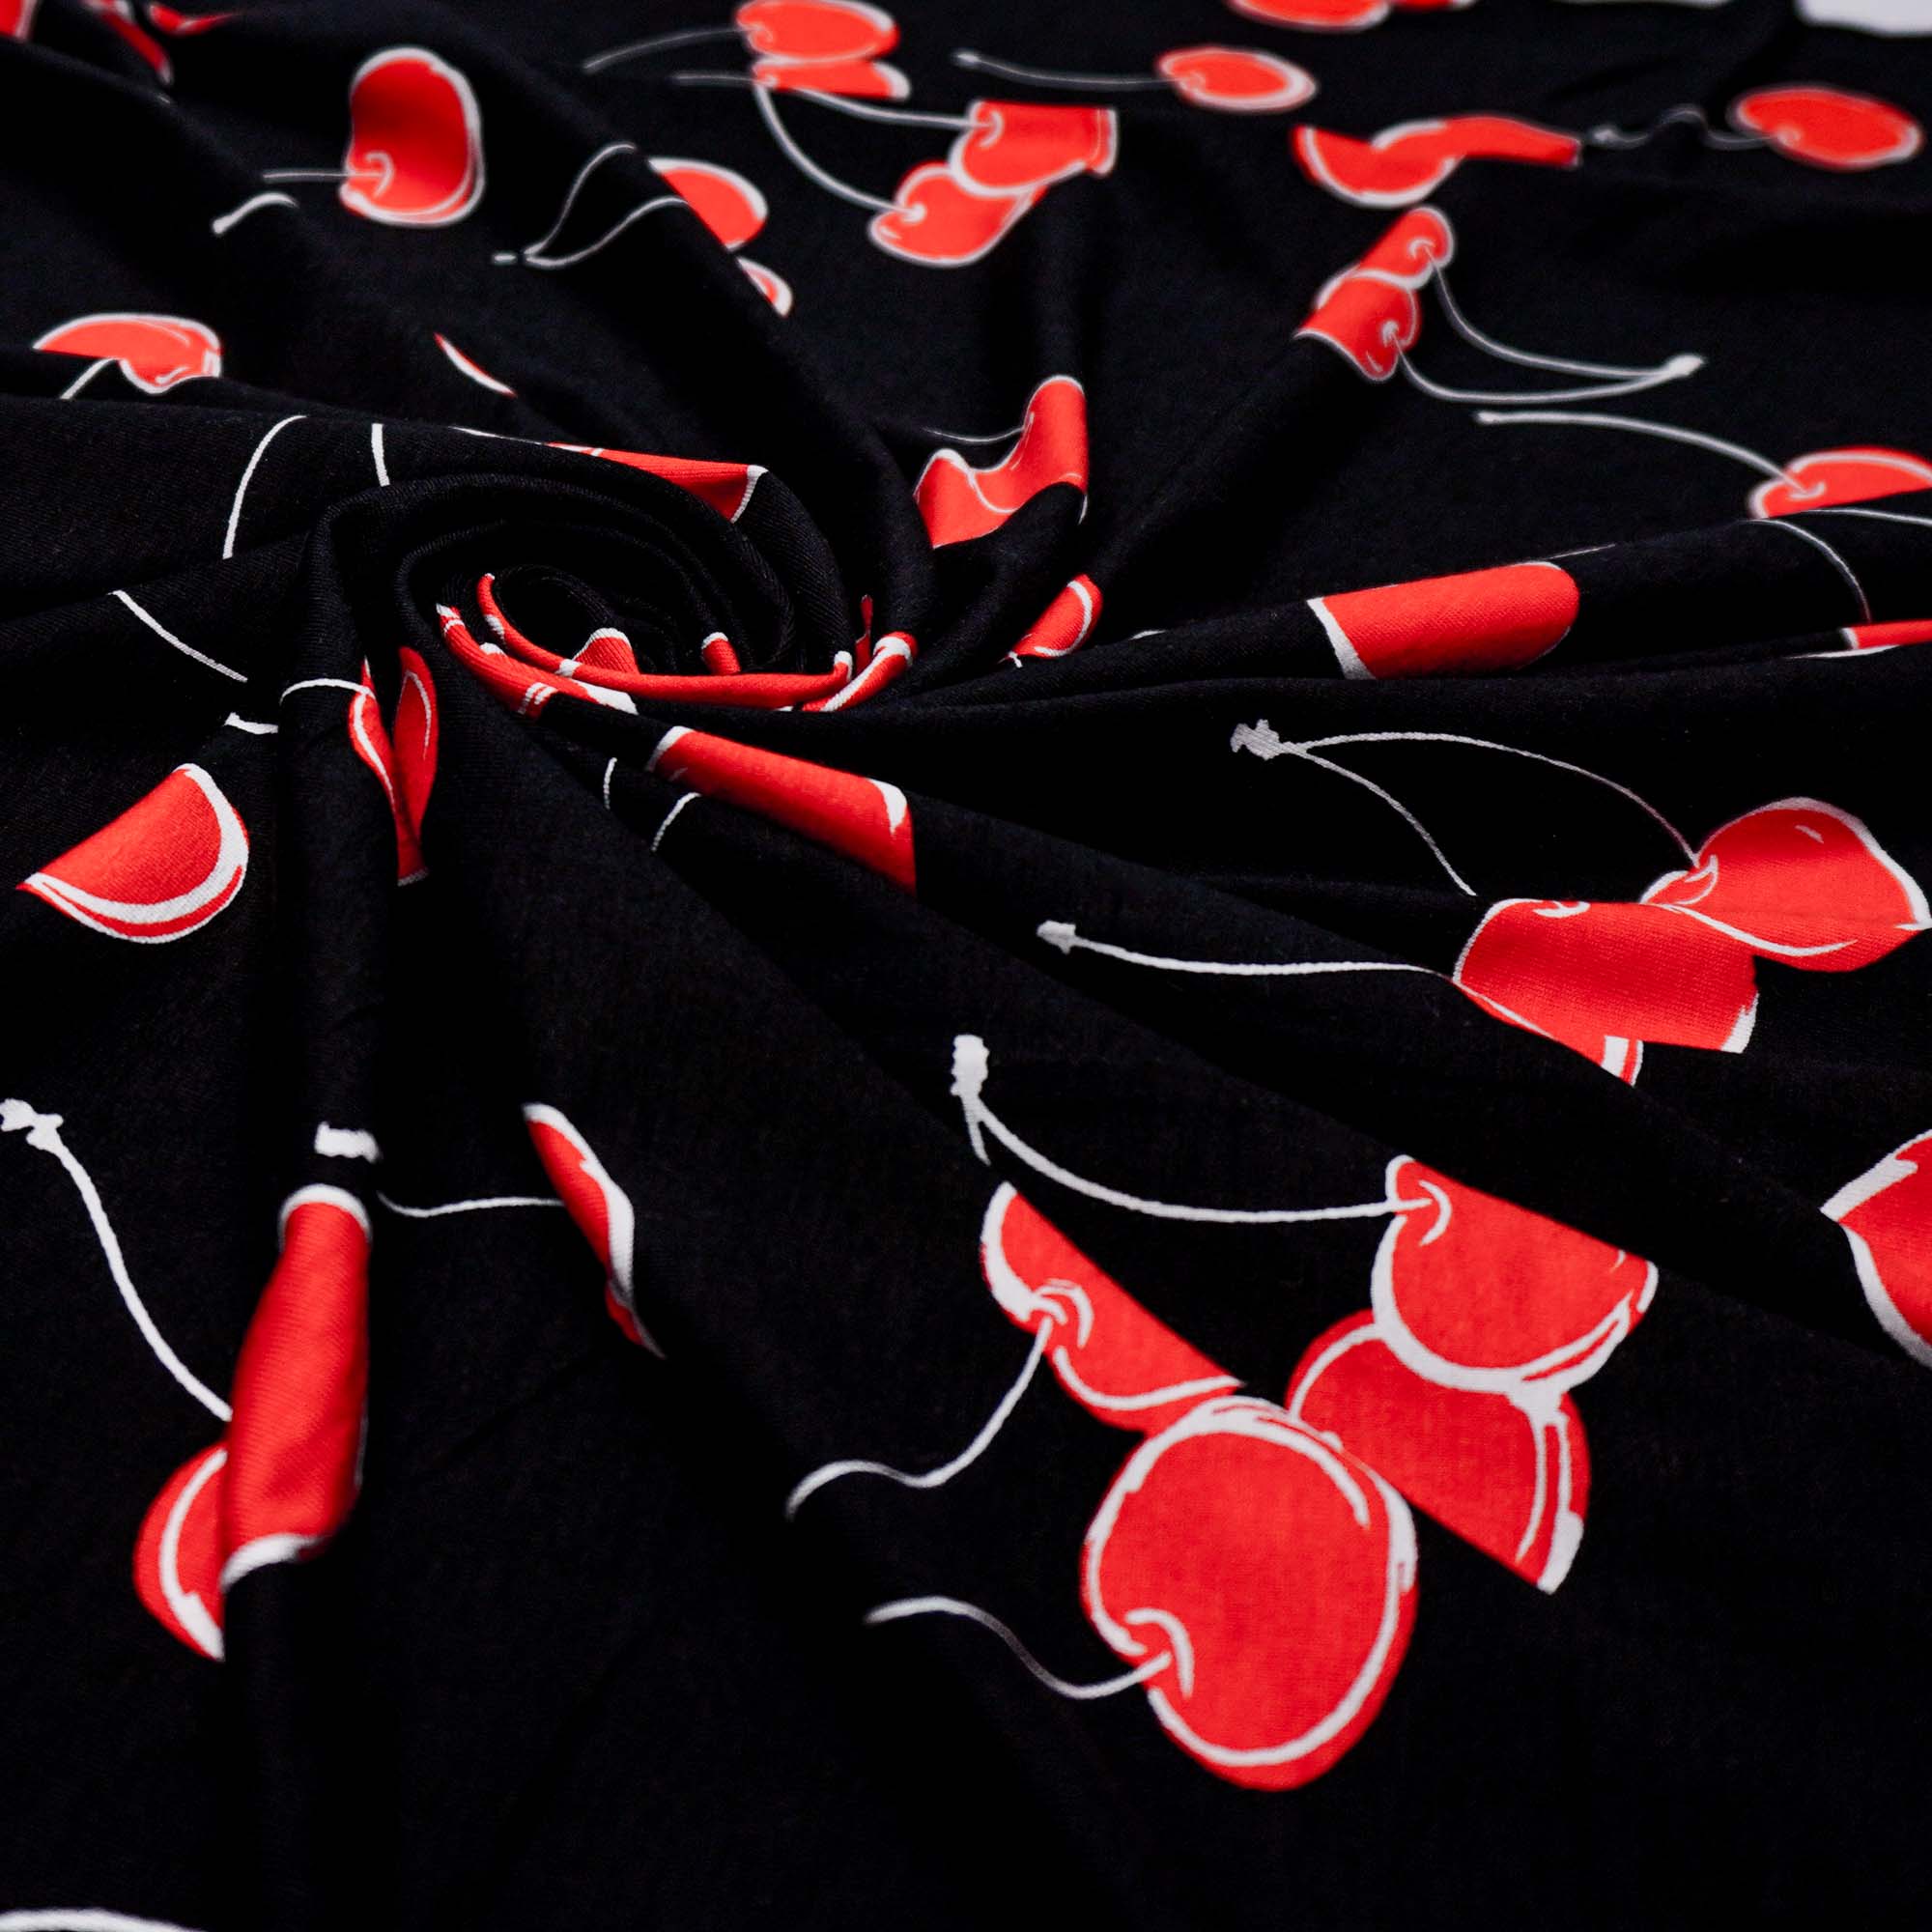 Tecido viscolycra preto estampado cereja (tecido italiano legítimo)